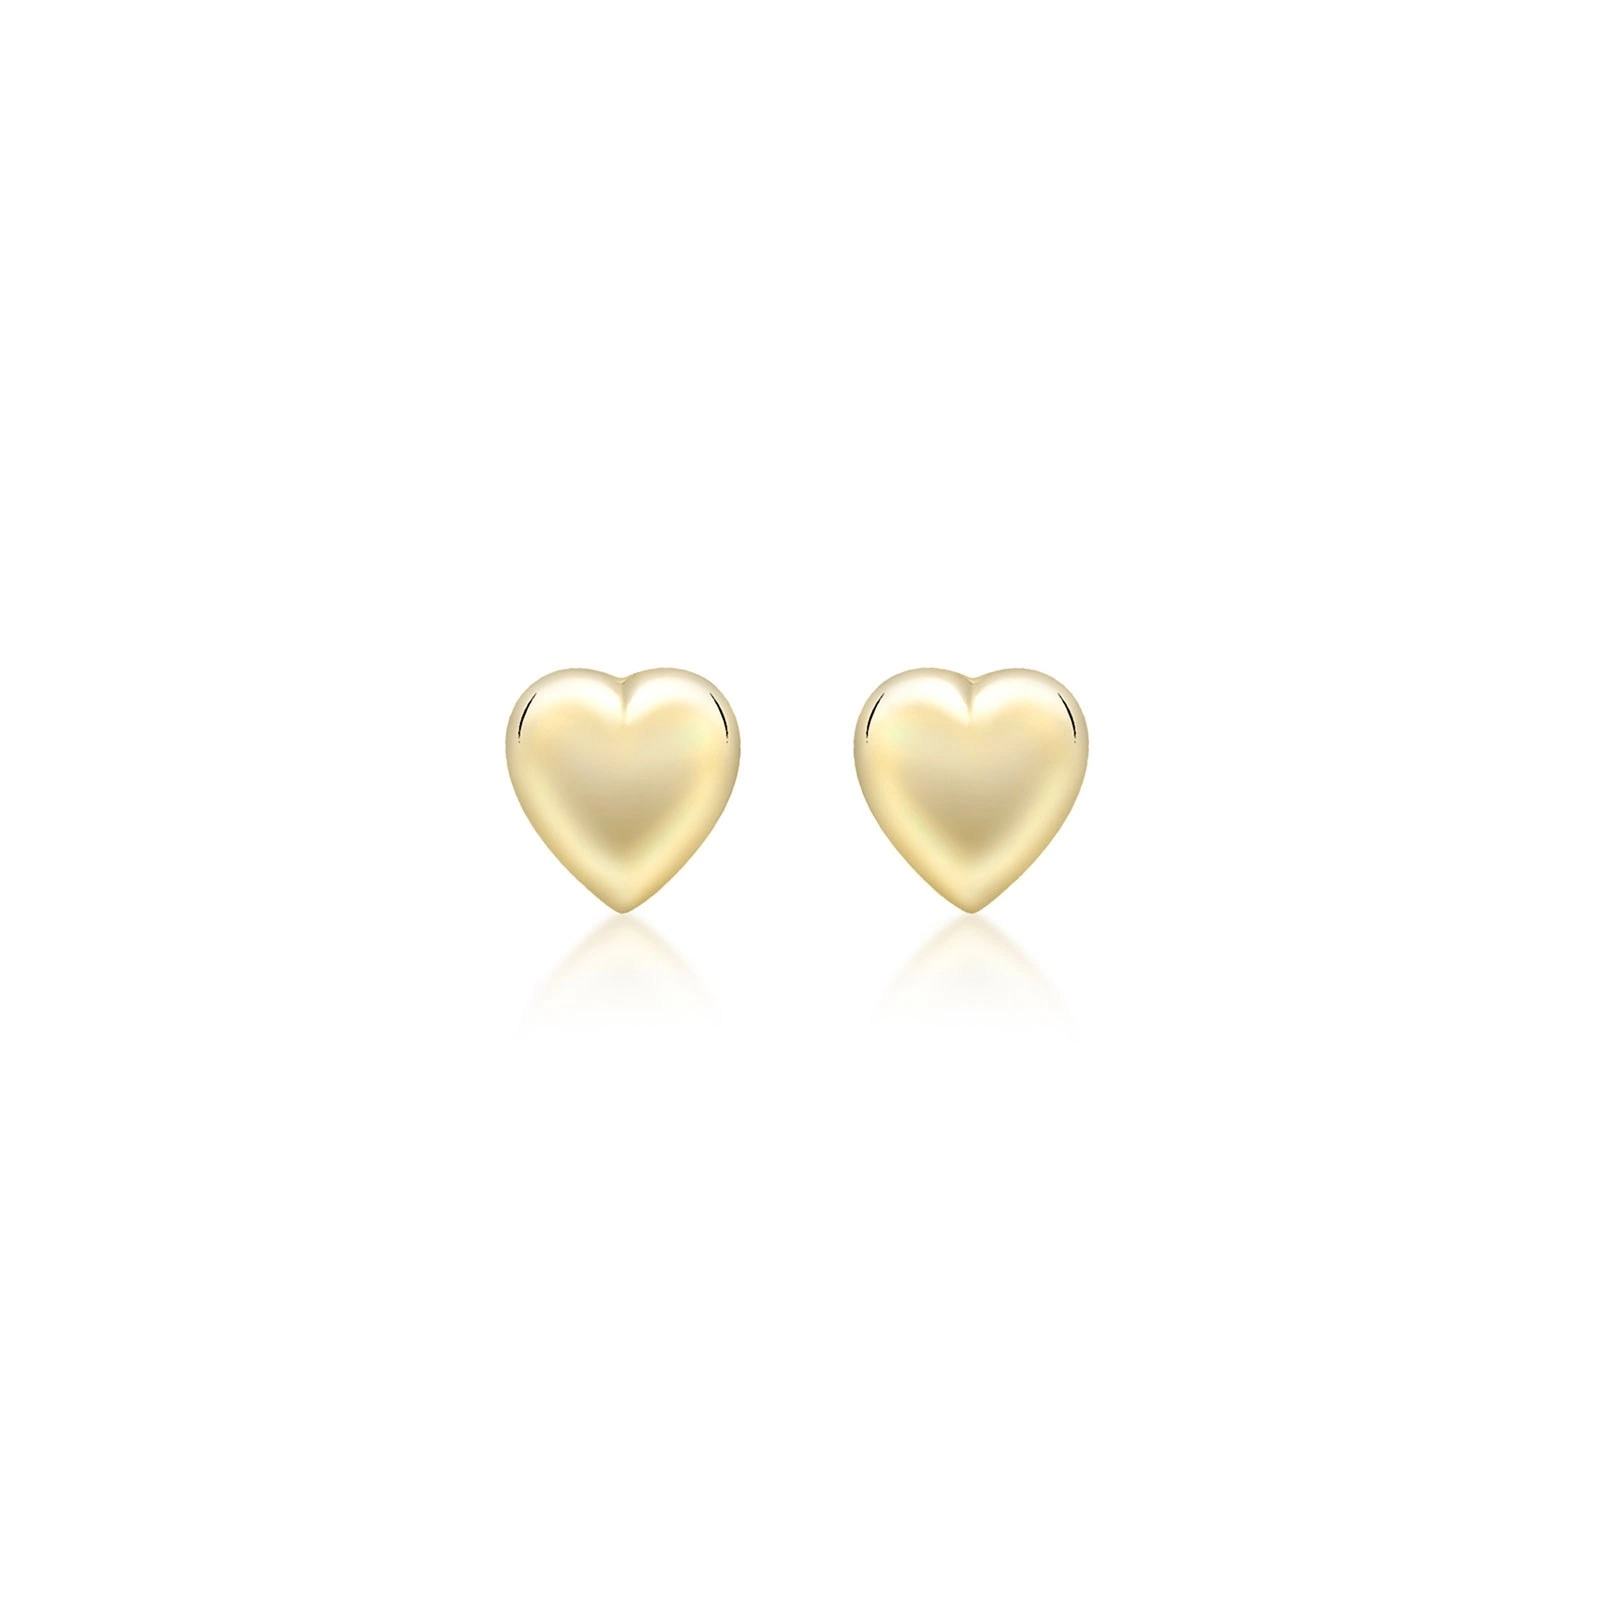 Örhängen för barn 9k guld - hjärtan 7 mm